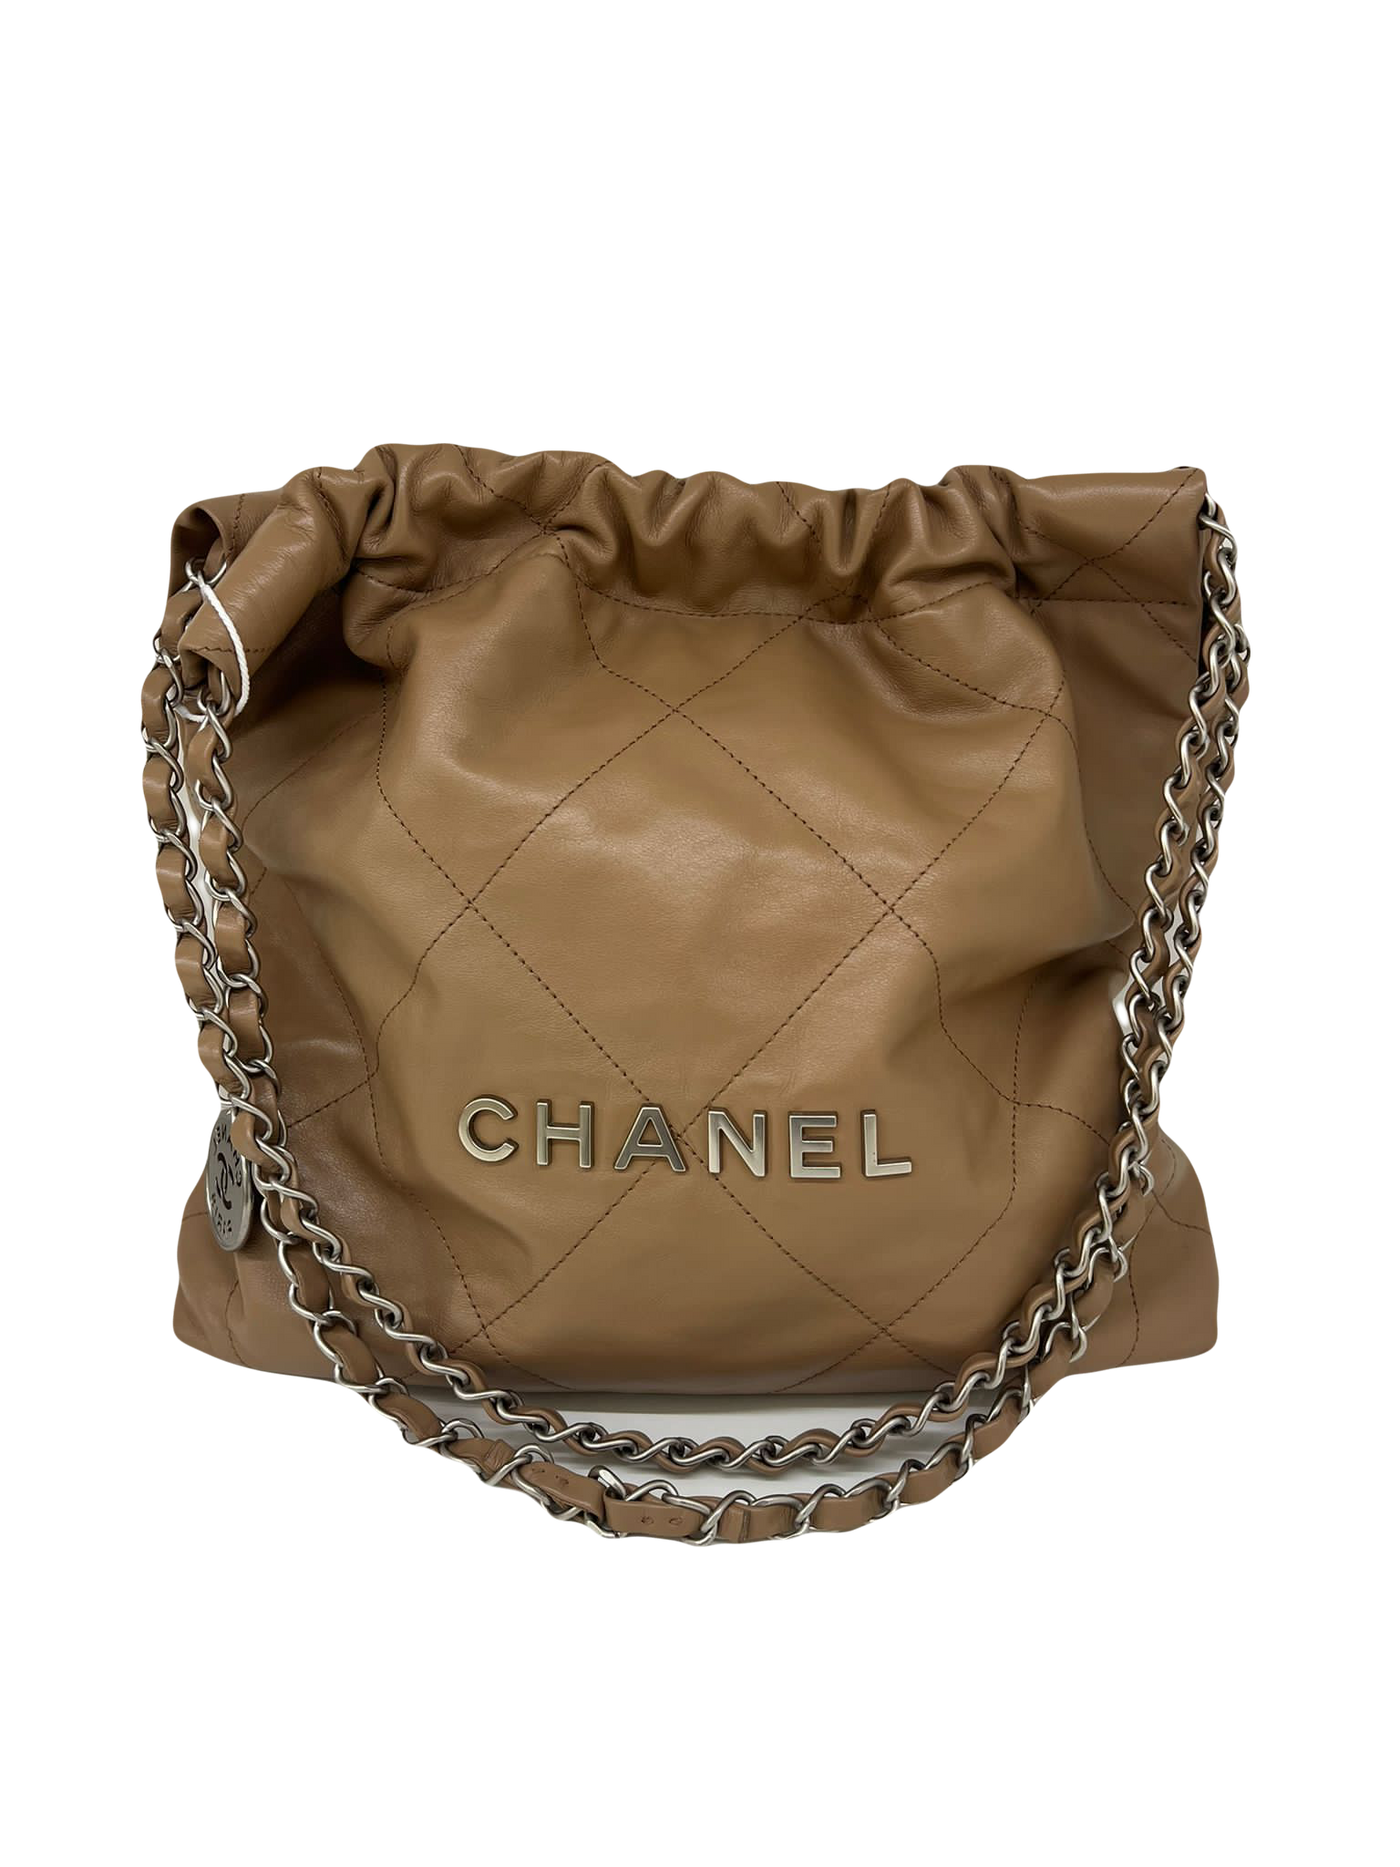 Chanel 22 small caramel SHW